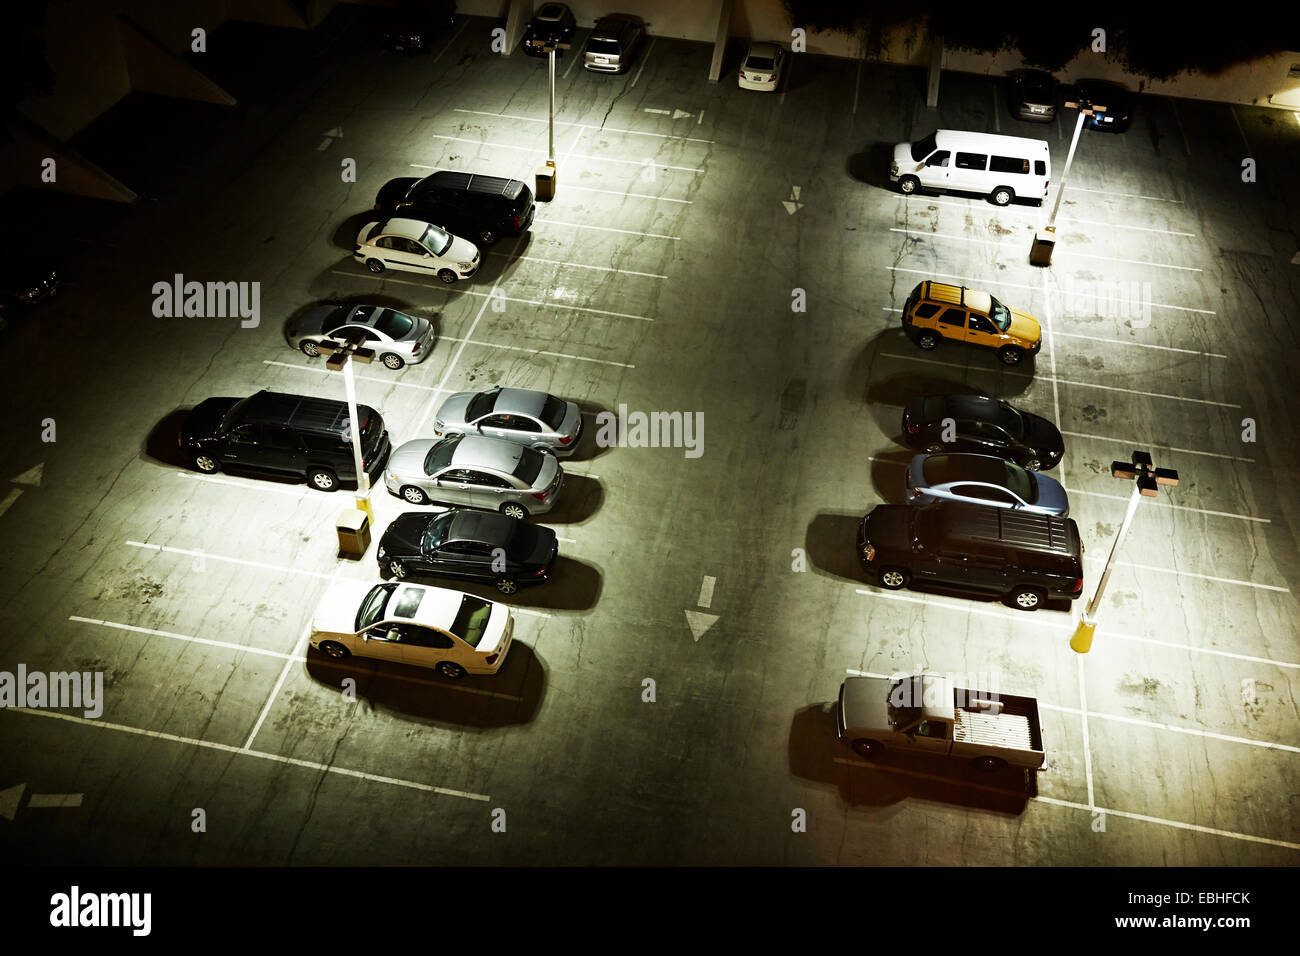 Portrait de voitures en stationnement de nuit Banque D'Images